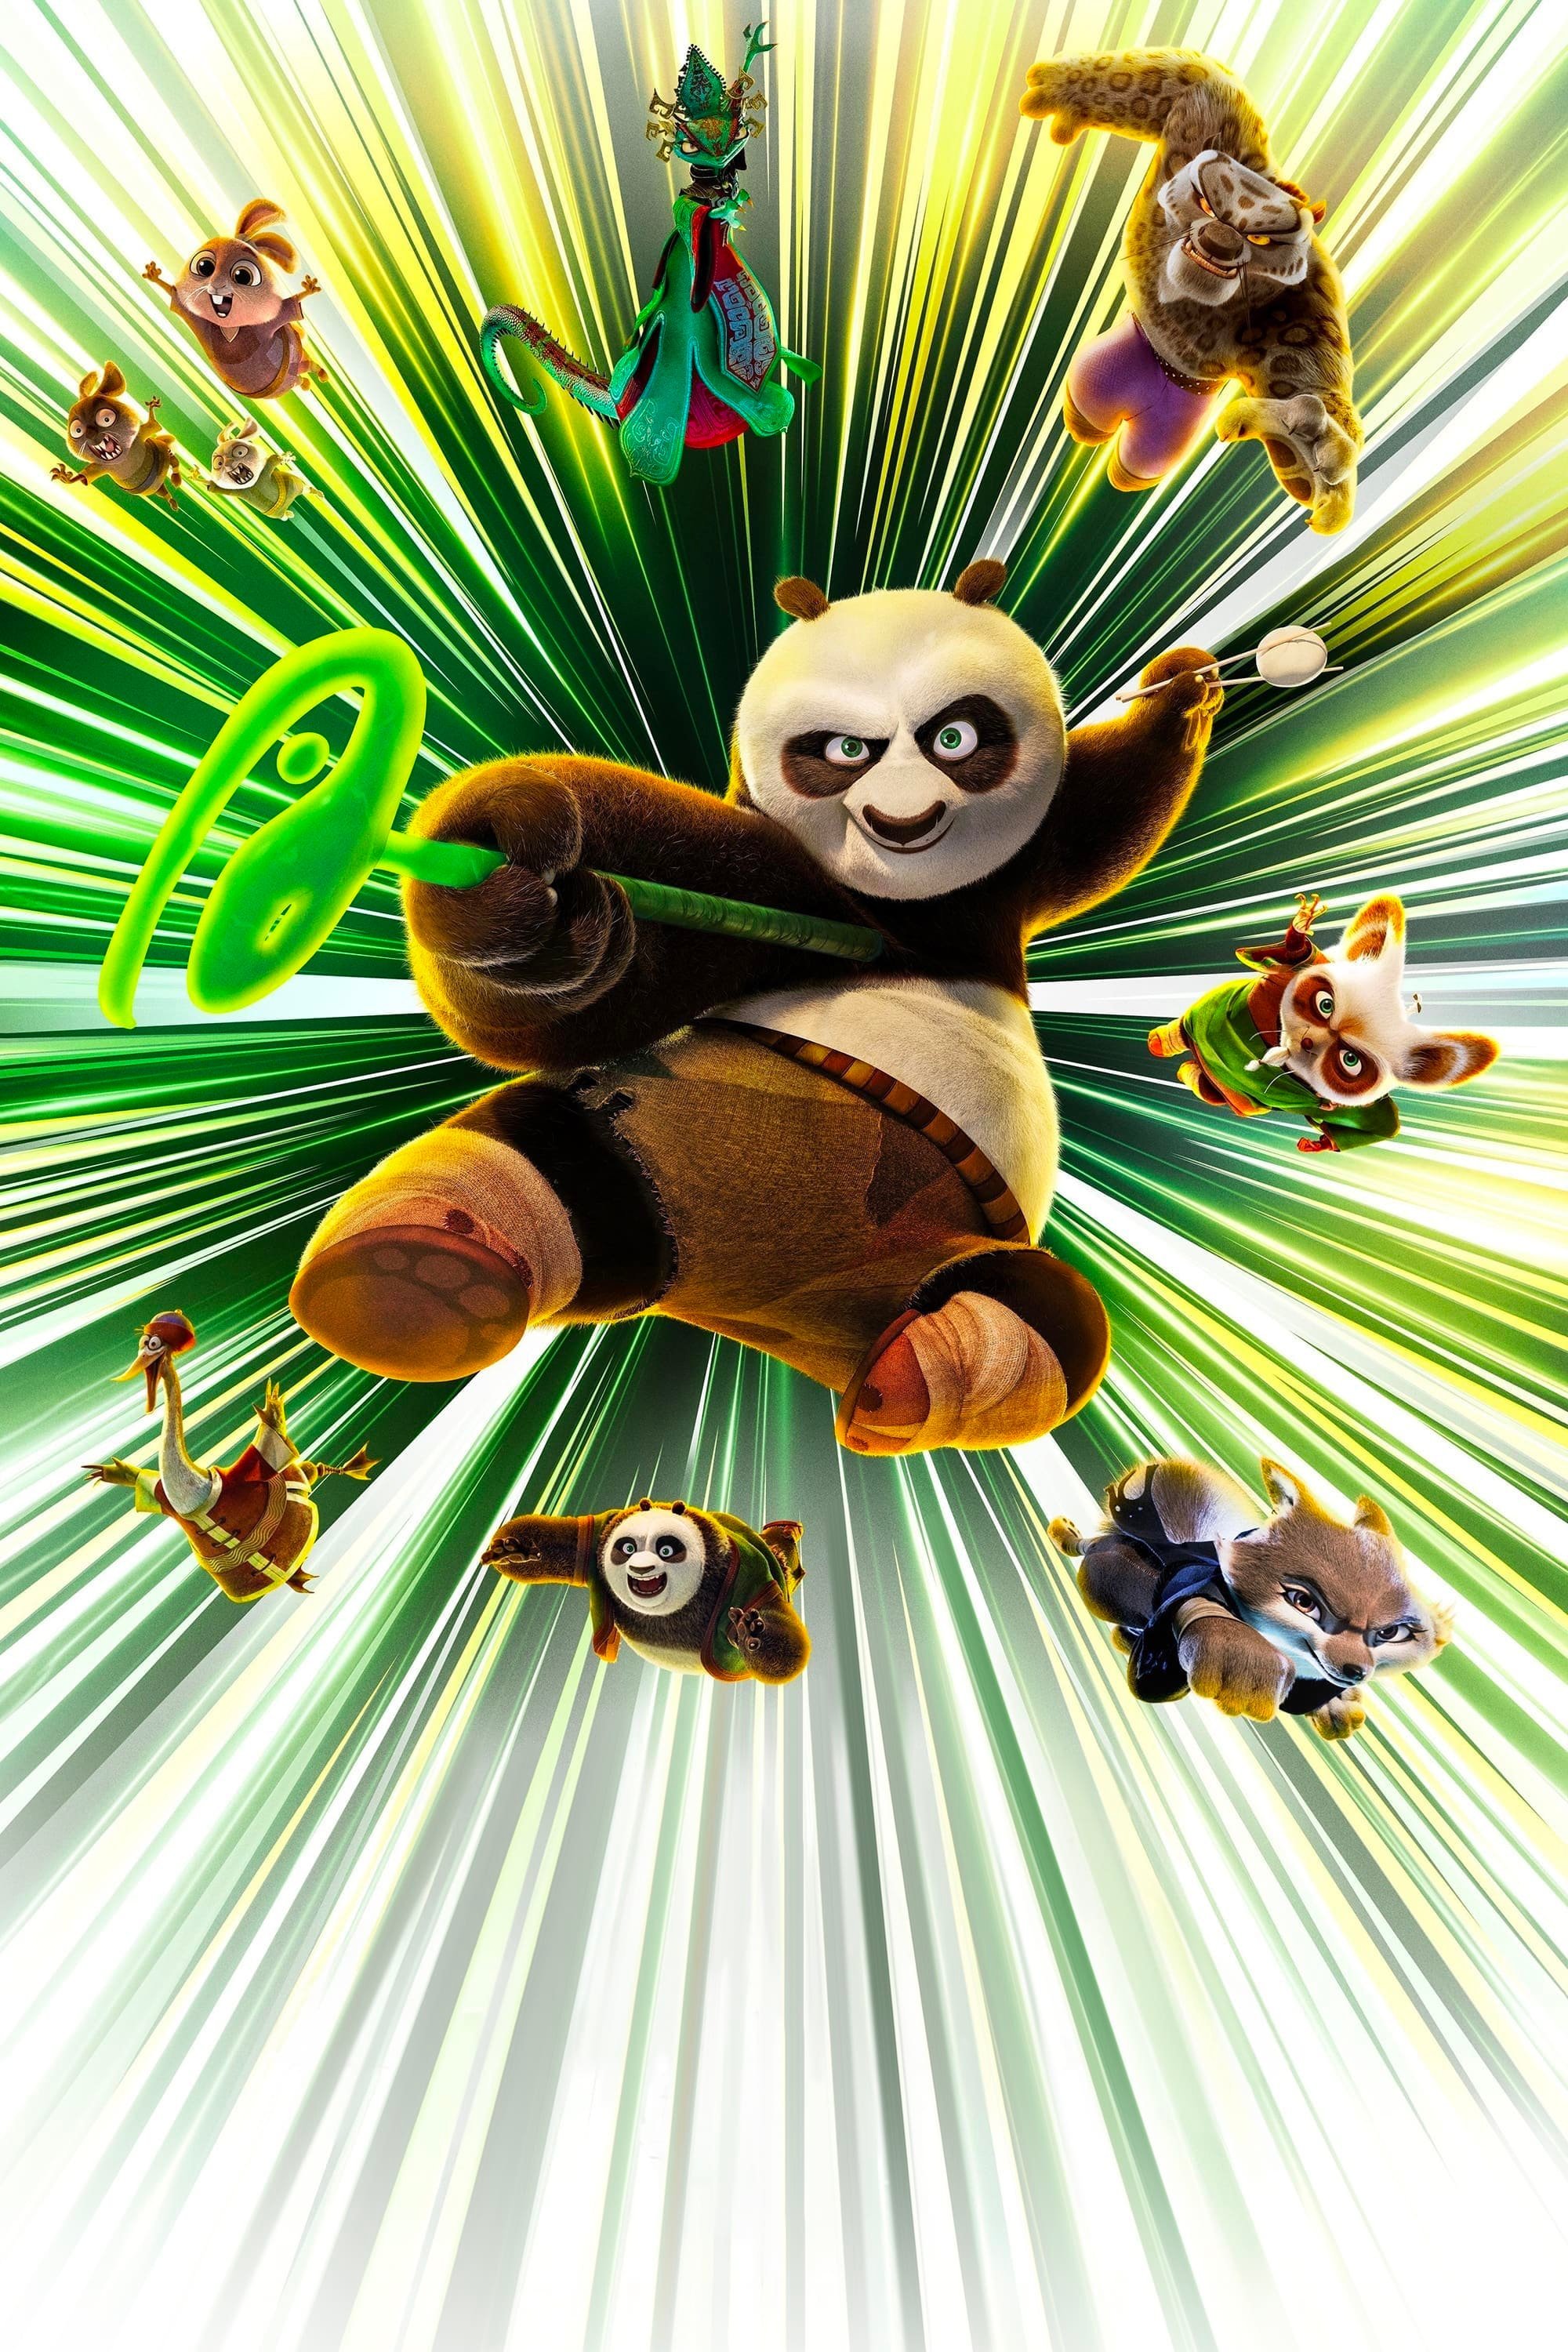 《功夫熊猫4》全球票房现已突破5亿美元  第2张